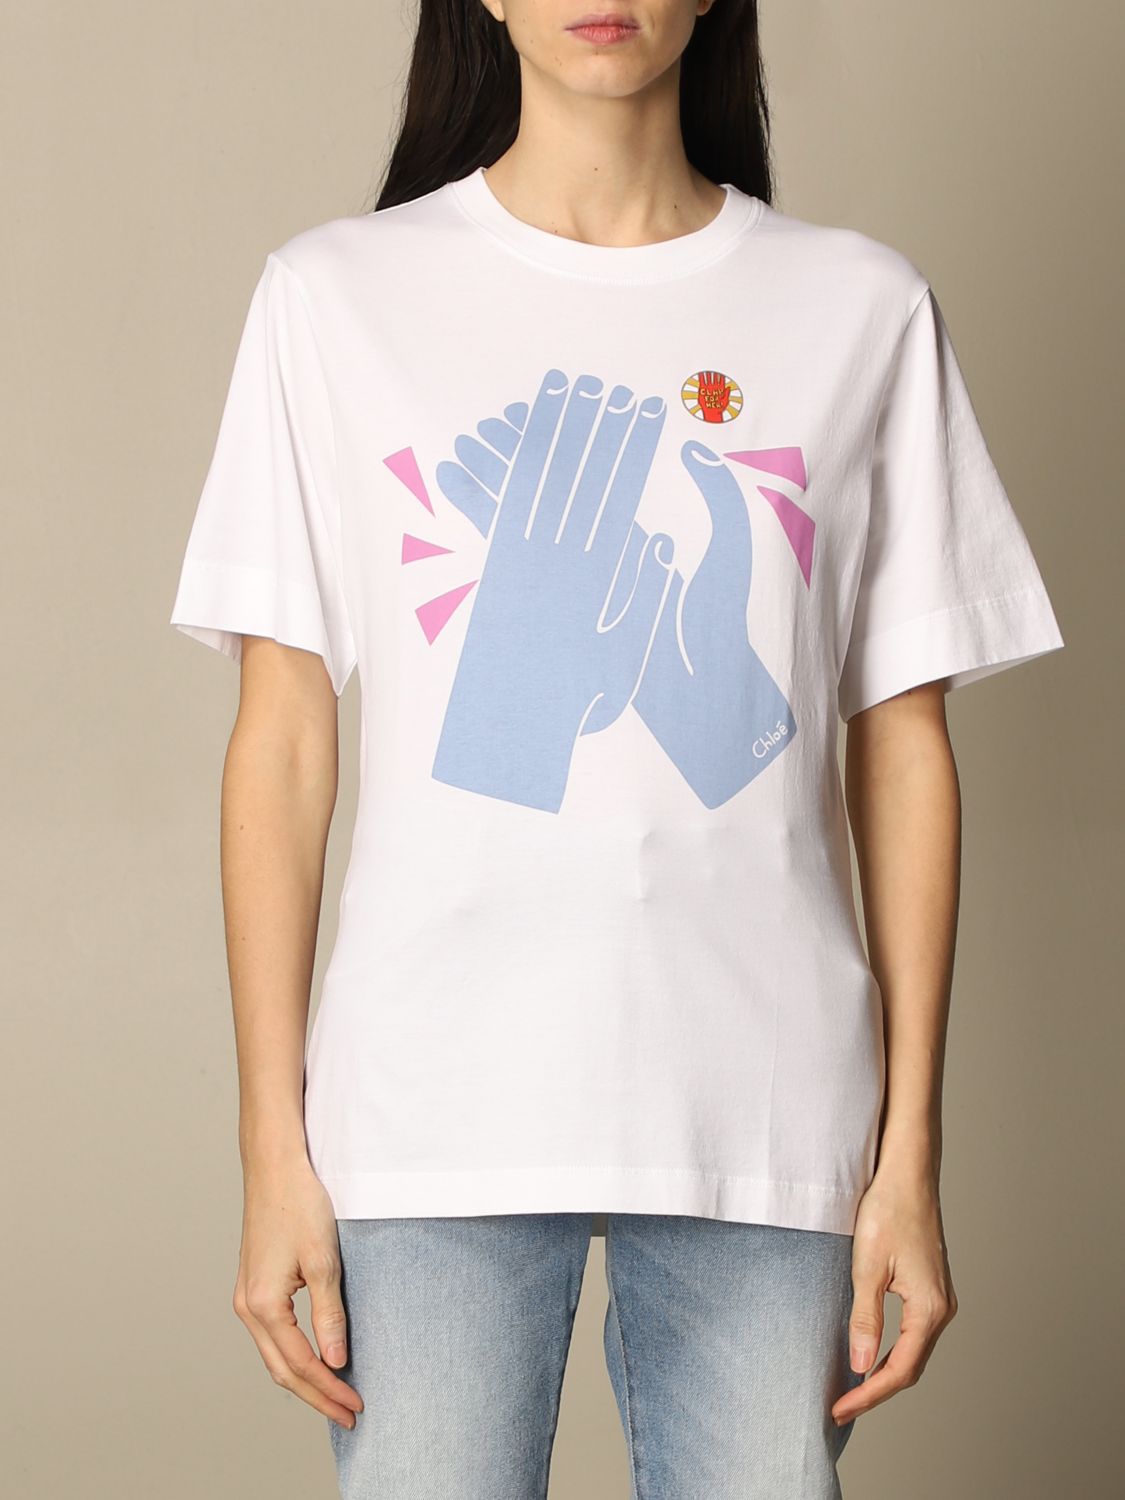 CHLOÉ: T-shirt women ChloÉ | T-Shirt Chloé Women White | T-Shirt Chloé